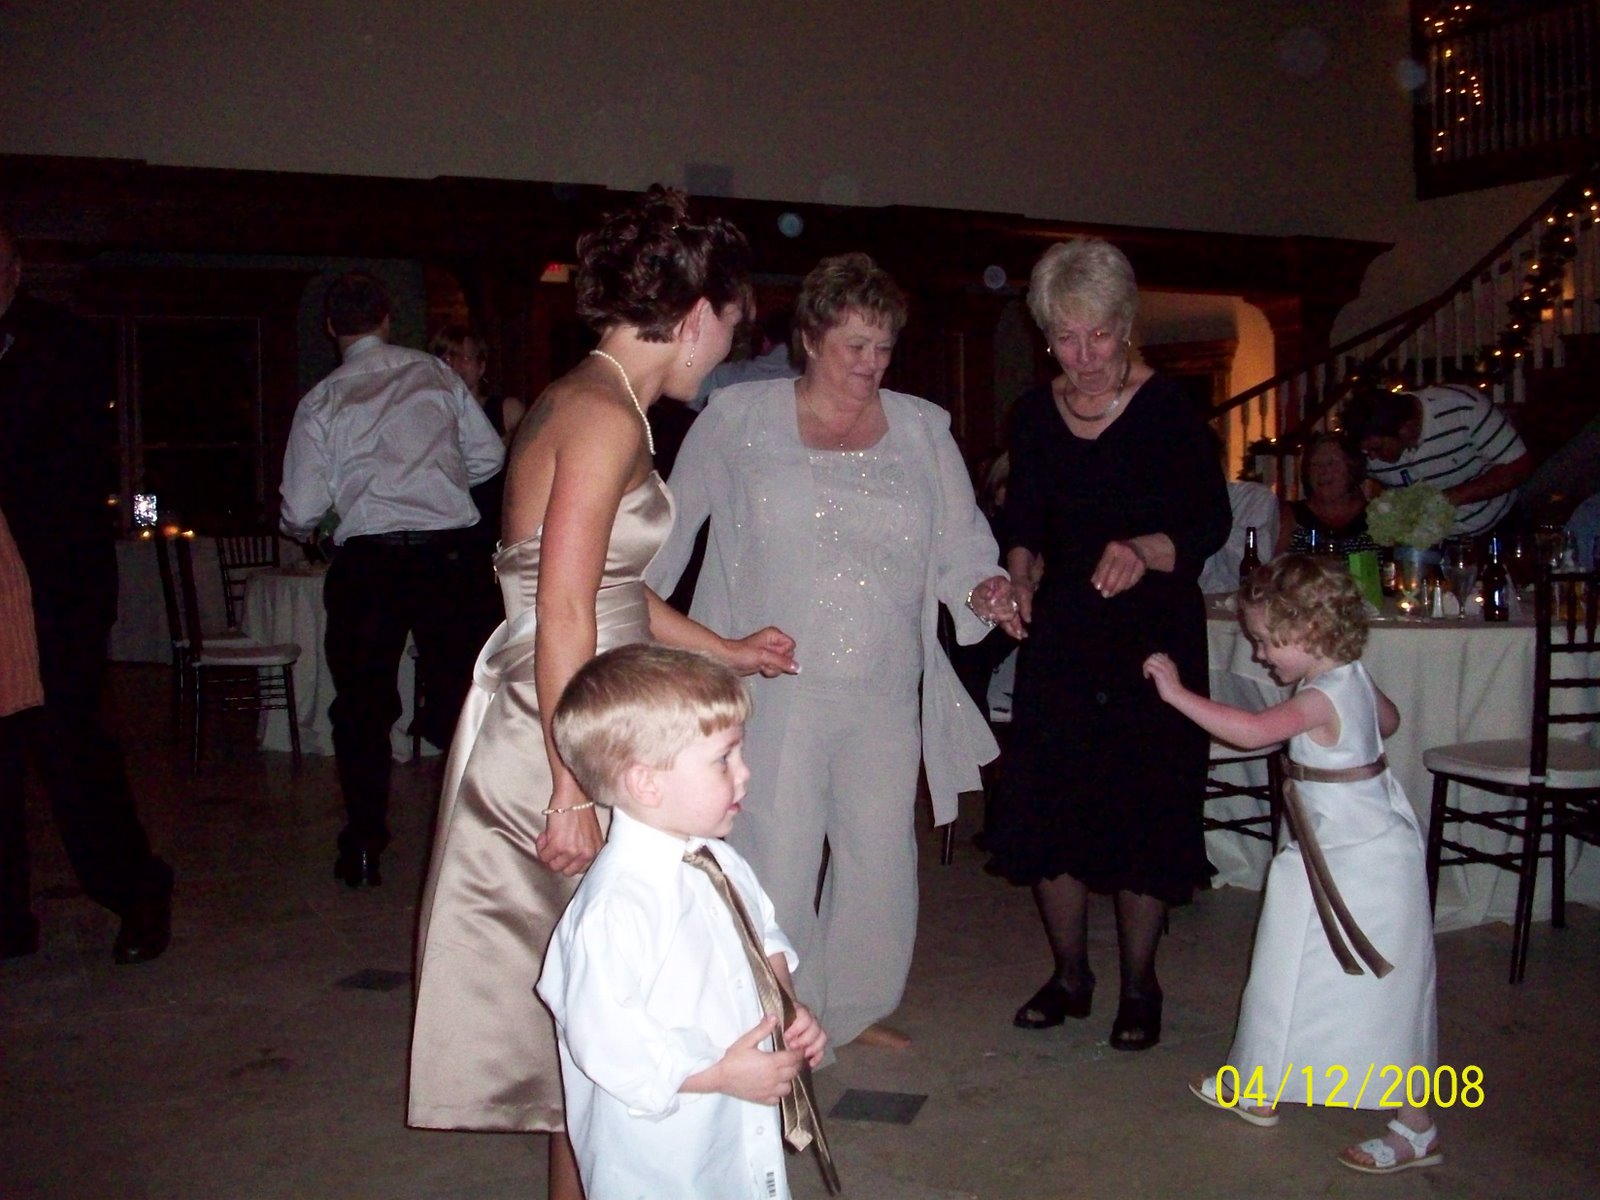 [Chrispin+and+Amy's+Wedding+April+2008+053.jpg]